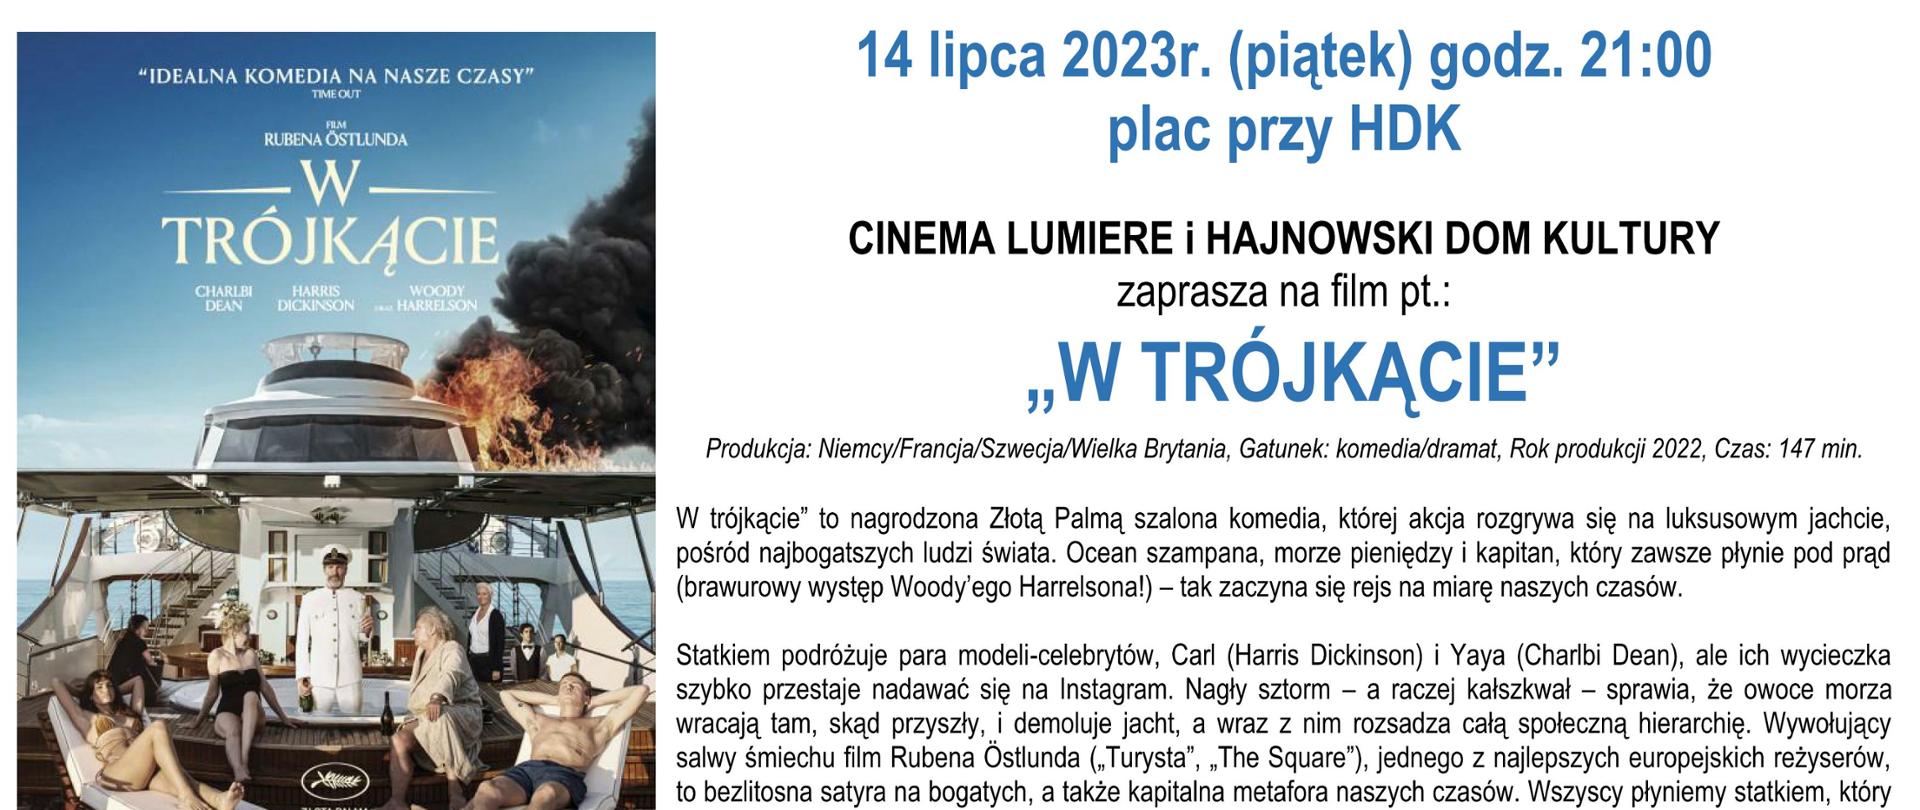 Na białym tle zdjęcie plakatu promującego film obok - informacje organizacyjne (zawarte w artykule) i logo HDK